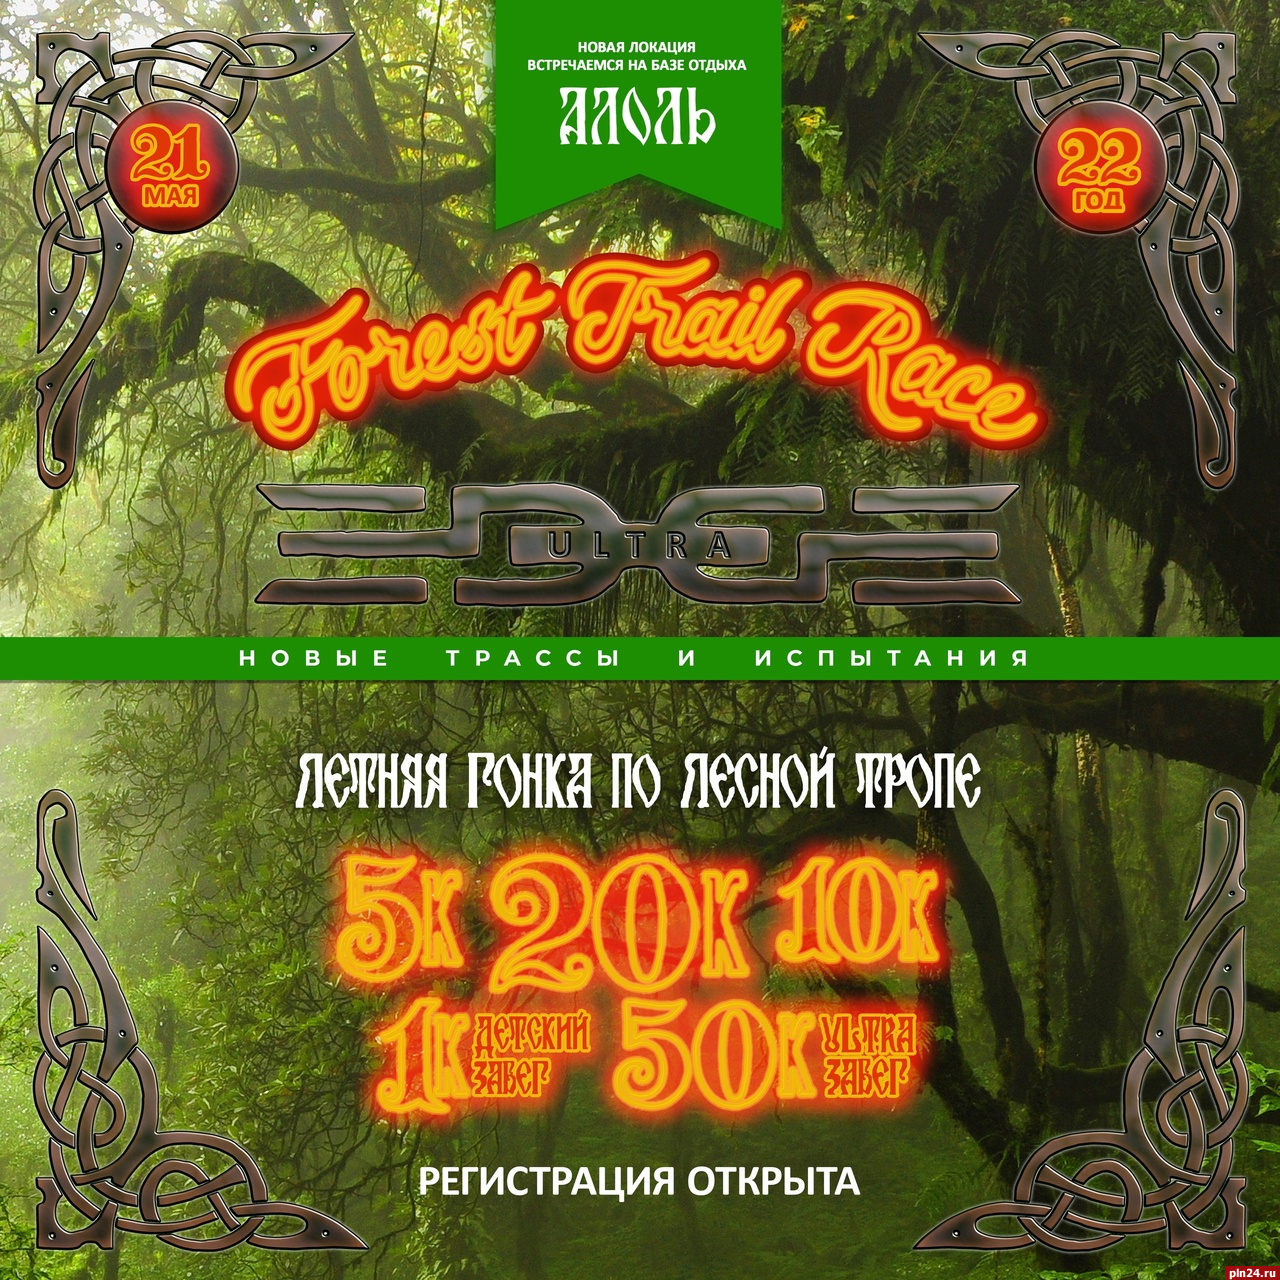 «Летняя гонка по лесной тропе» пройдет в Пустошкинском районе